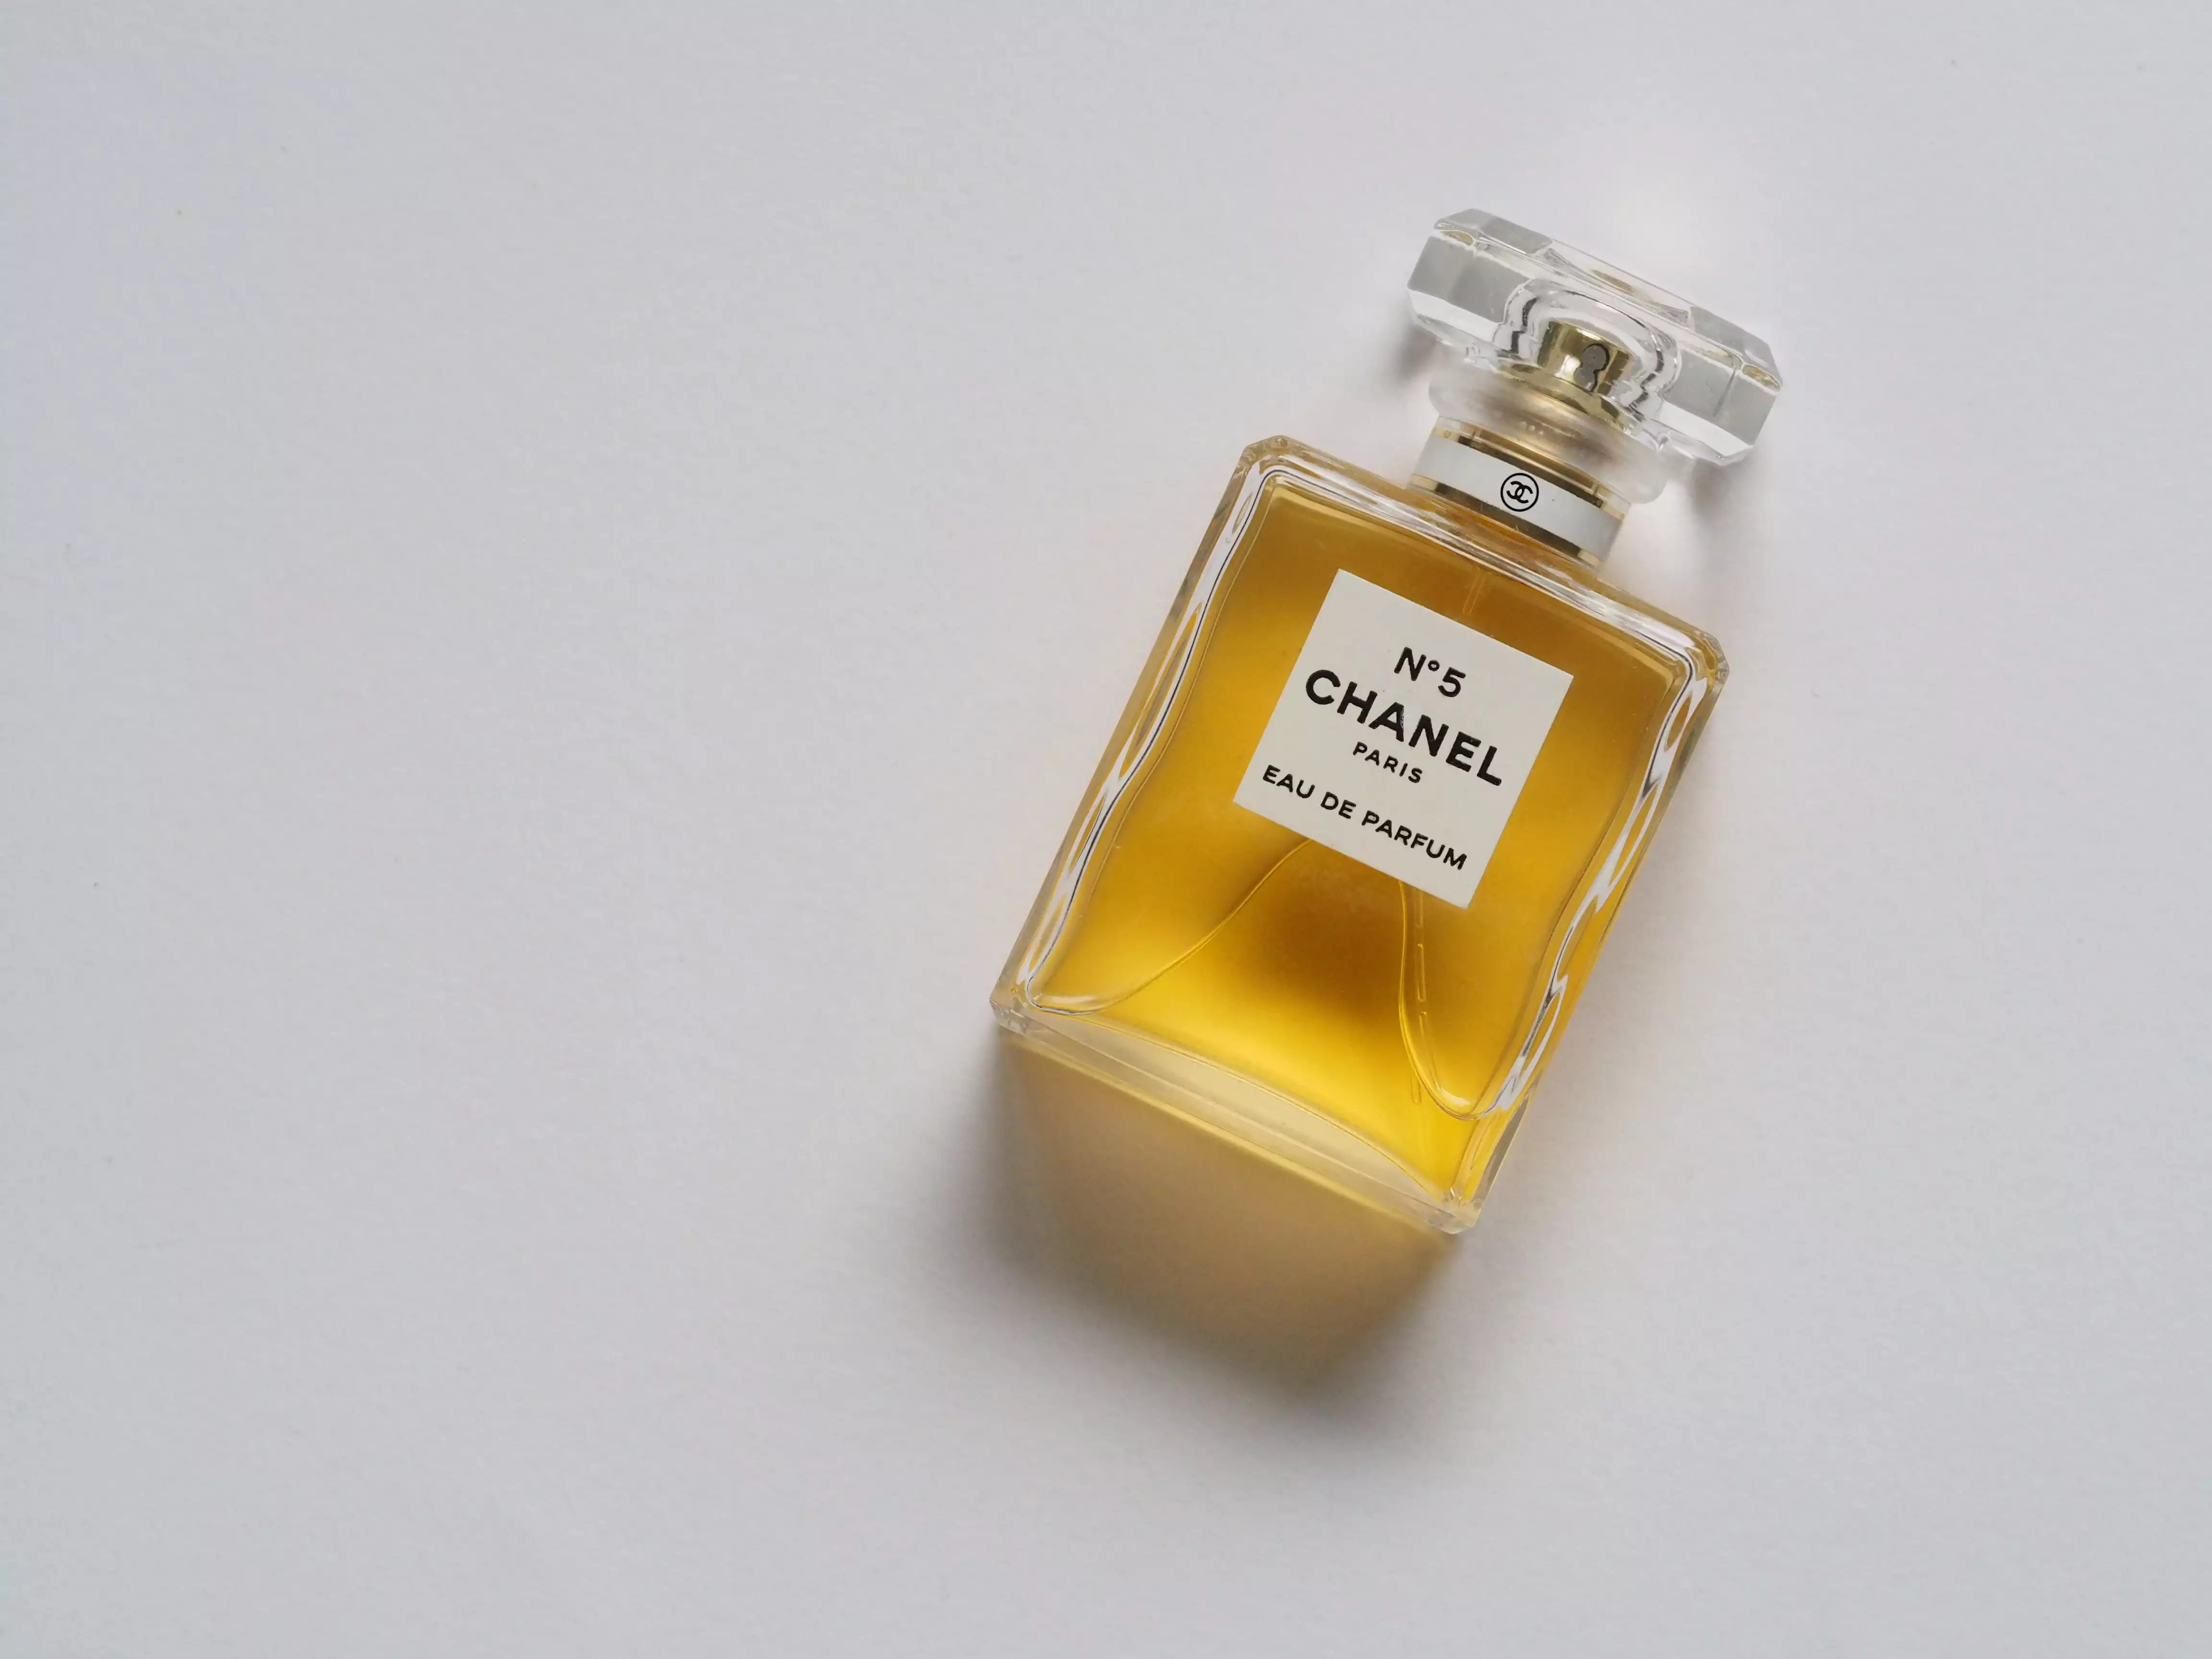 Bottle of Chanel perfume